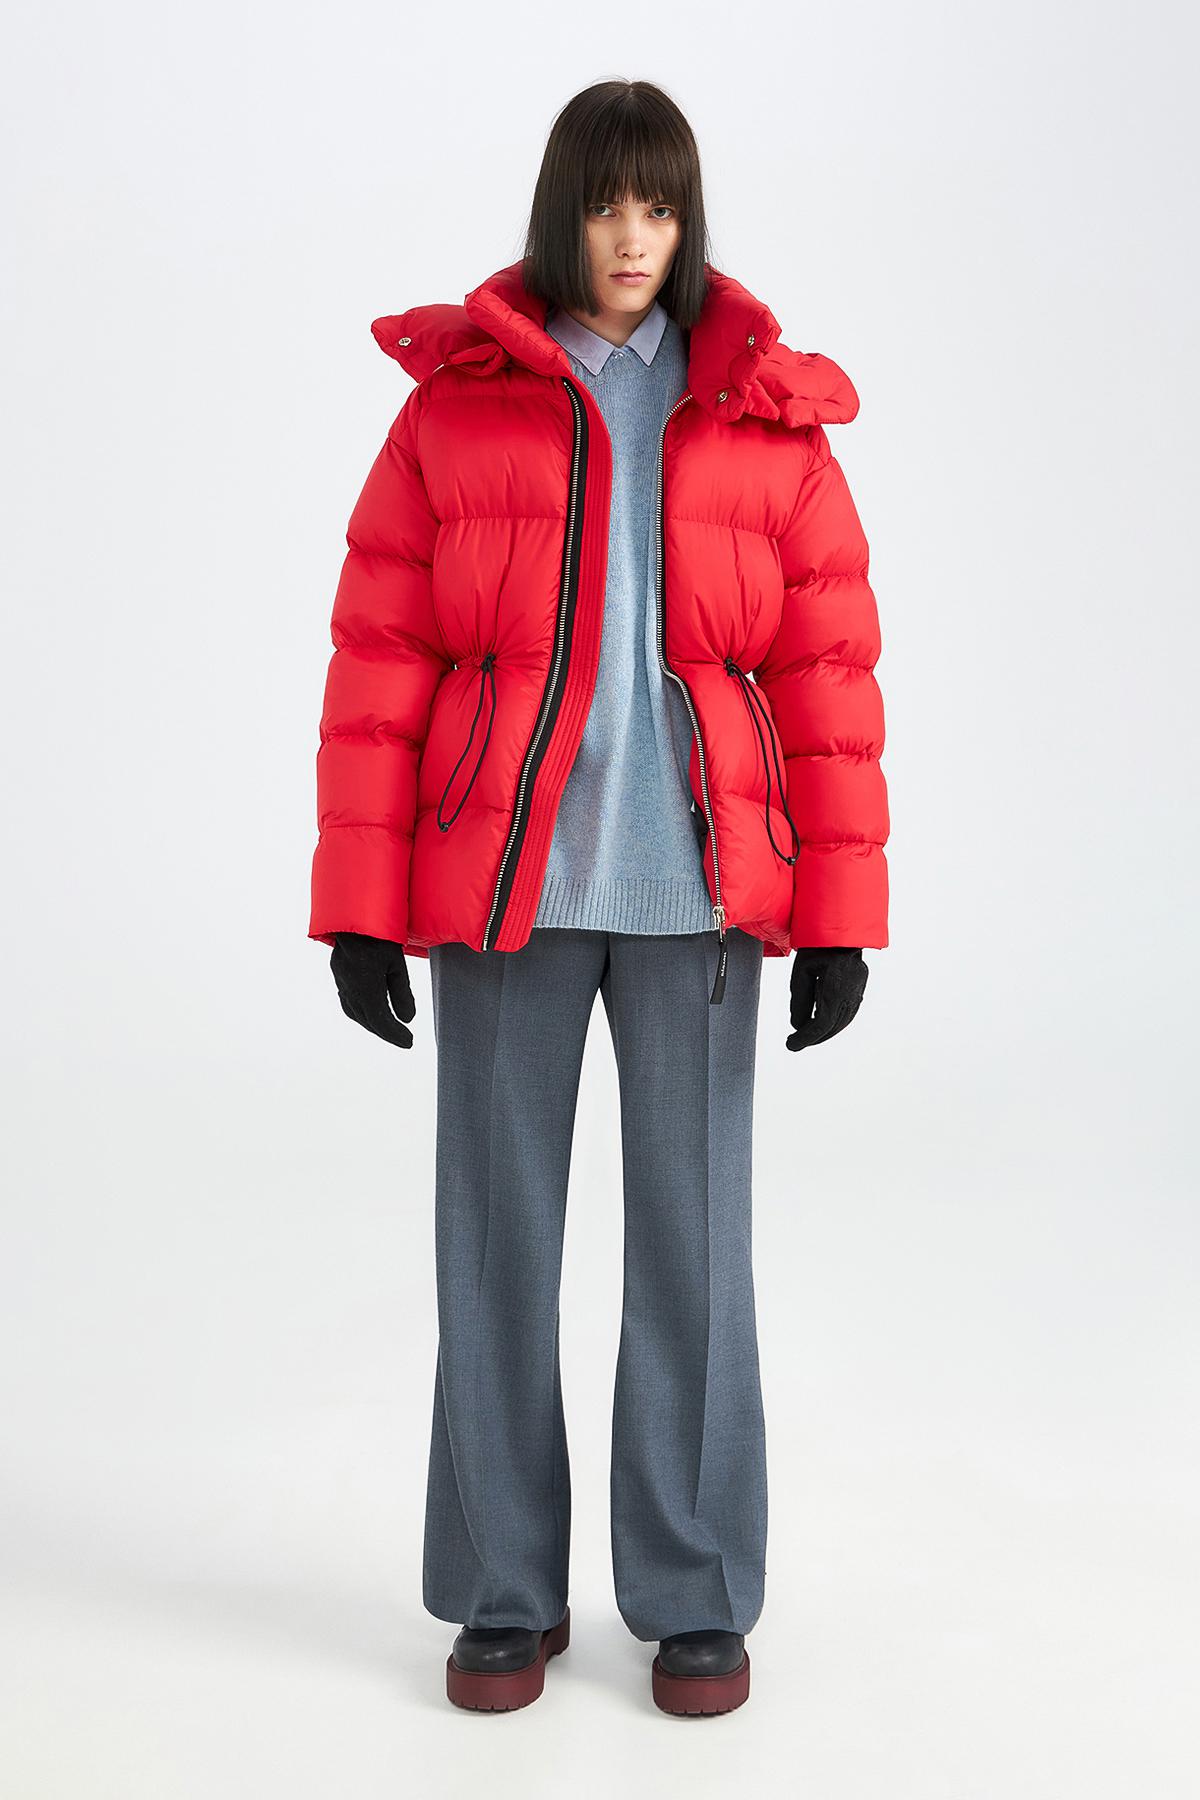 Куртка Luba, Novaya, 30 600 руб. (novayawear.com)